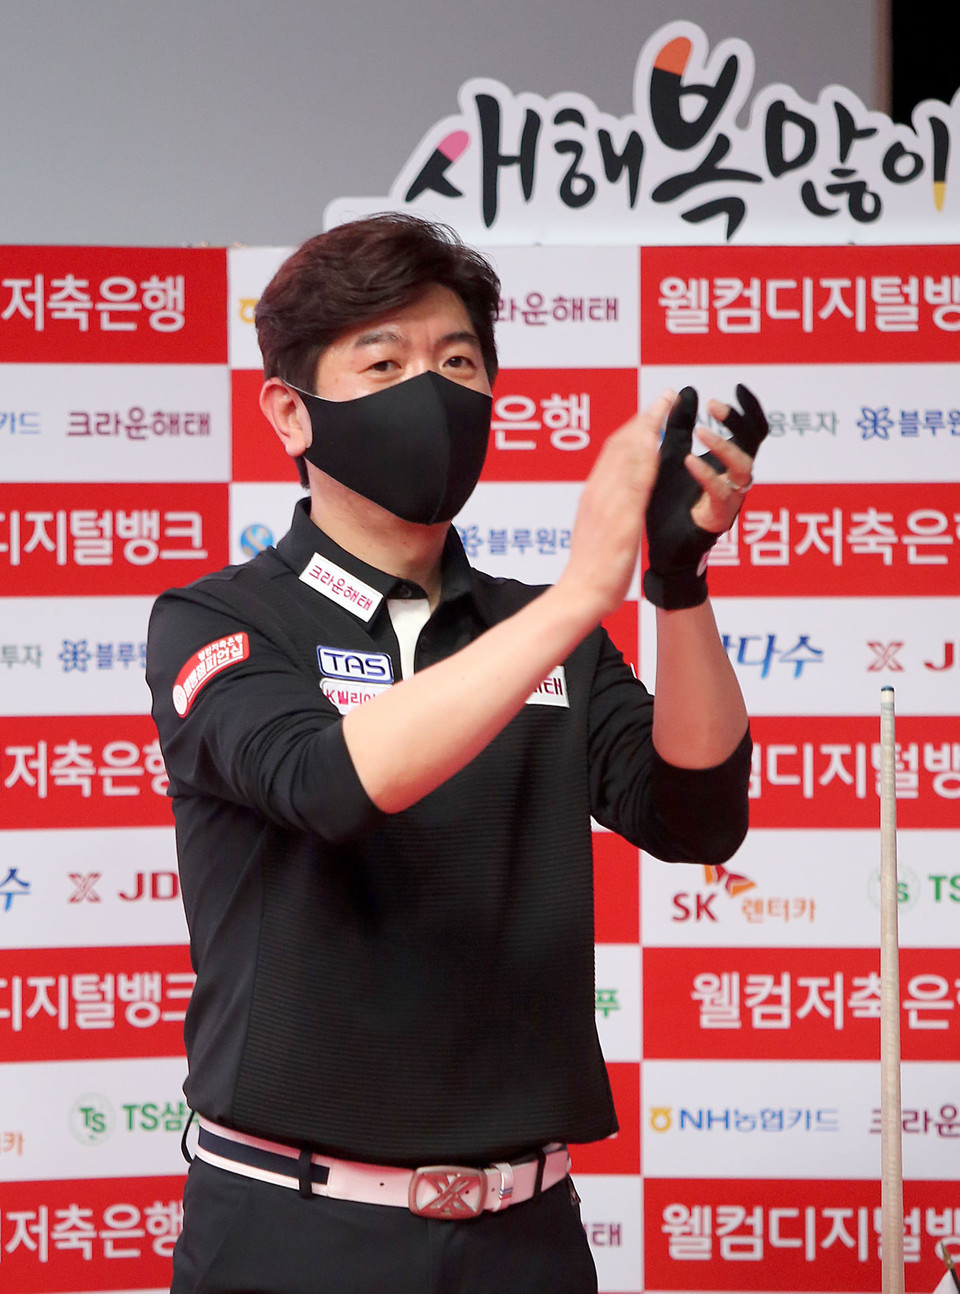 첫 준결승 진출로 기대를 모았던 김재근이 강민구의 승리를 축하하고 있다.  사진=김용근/PBA 프로당구협회